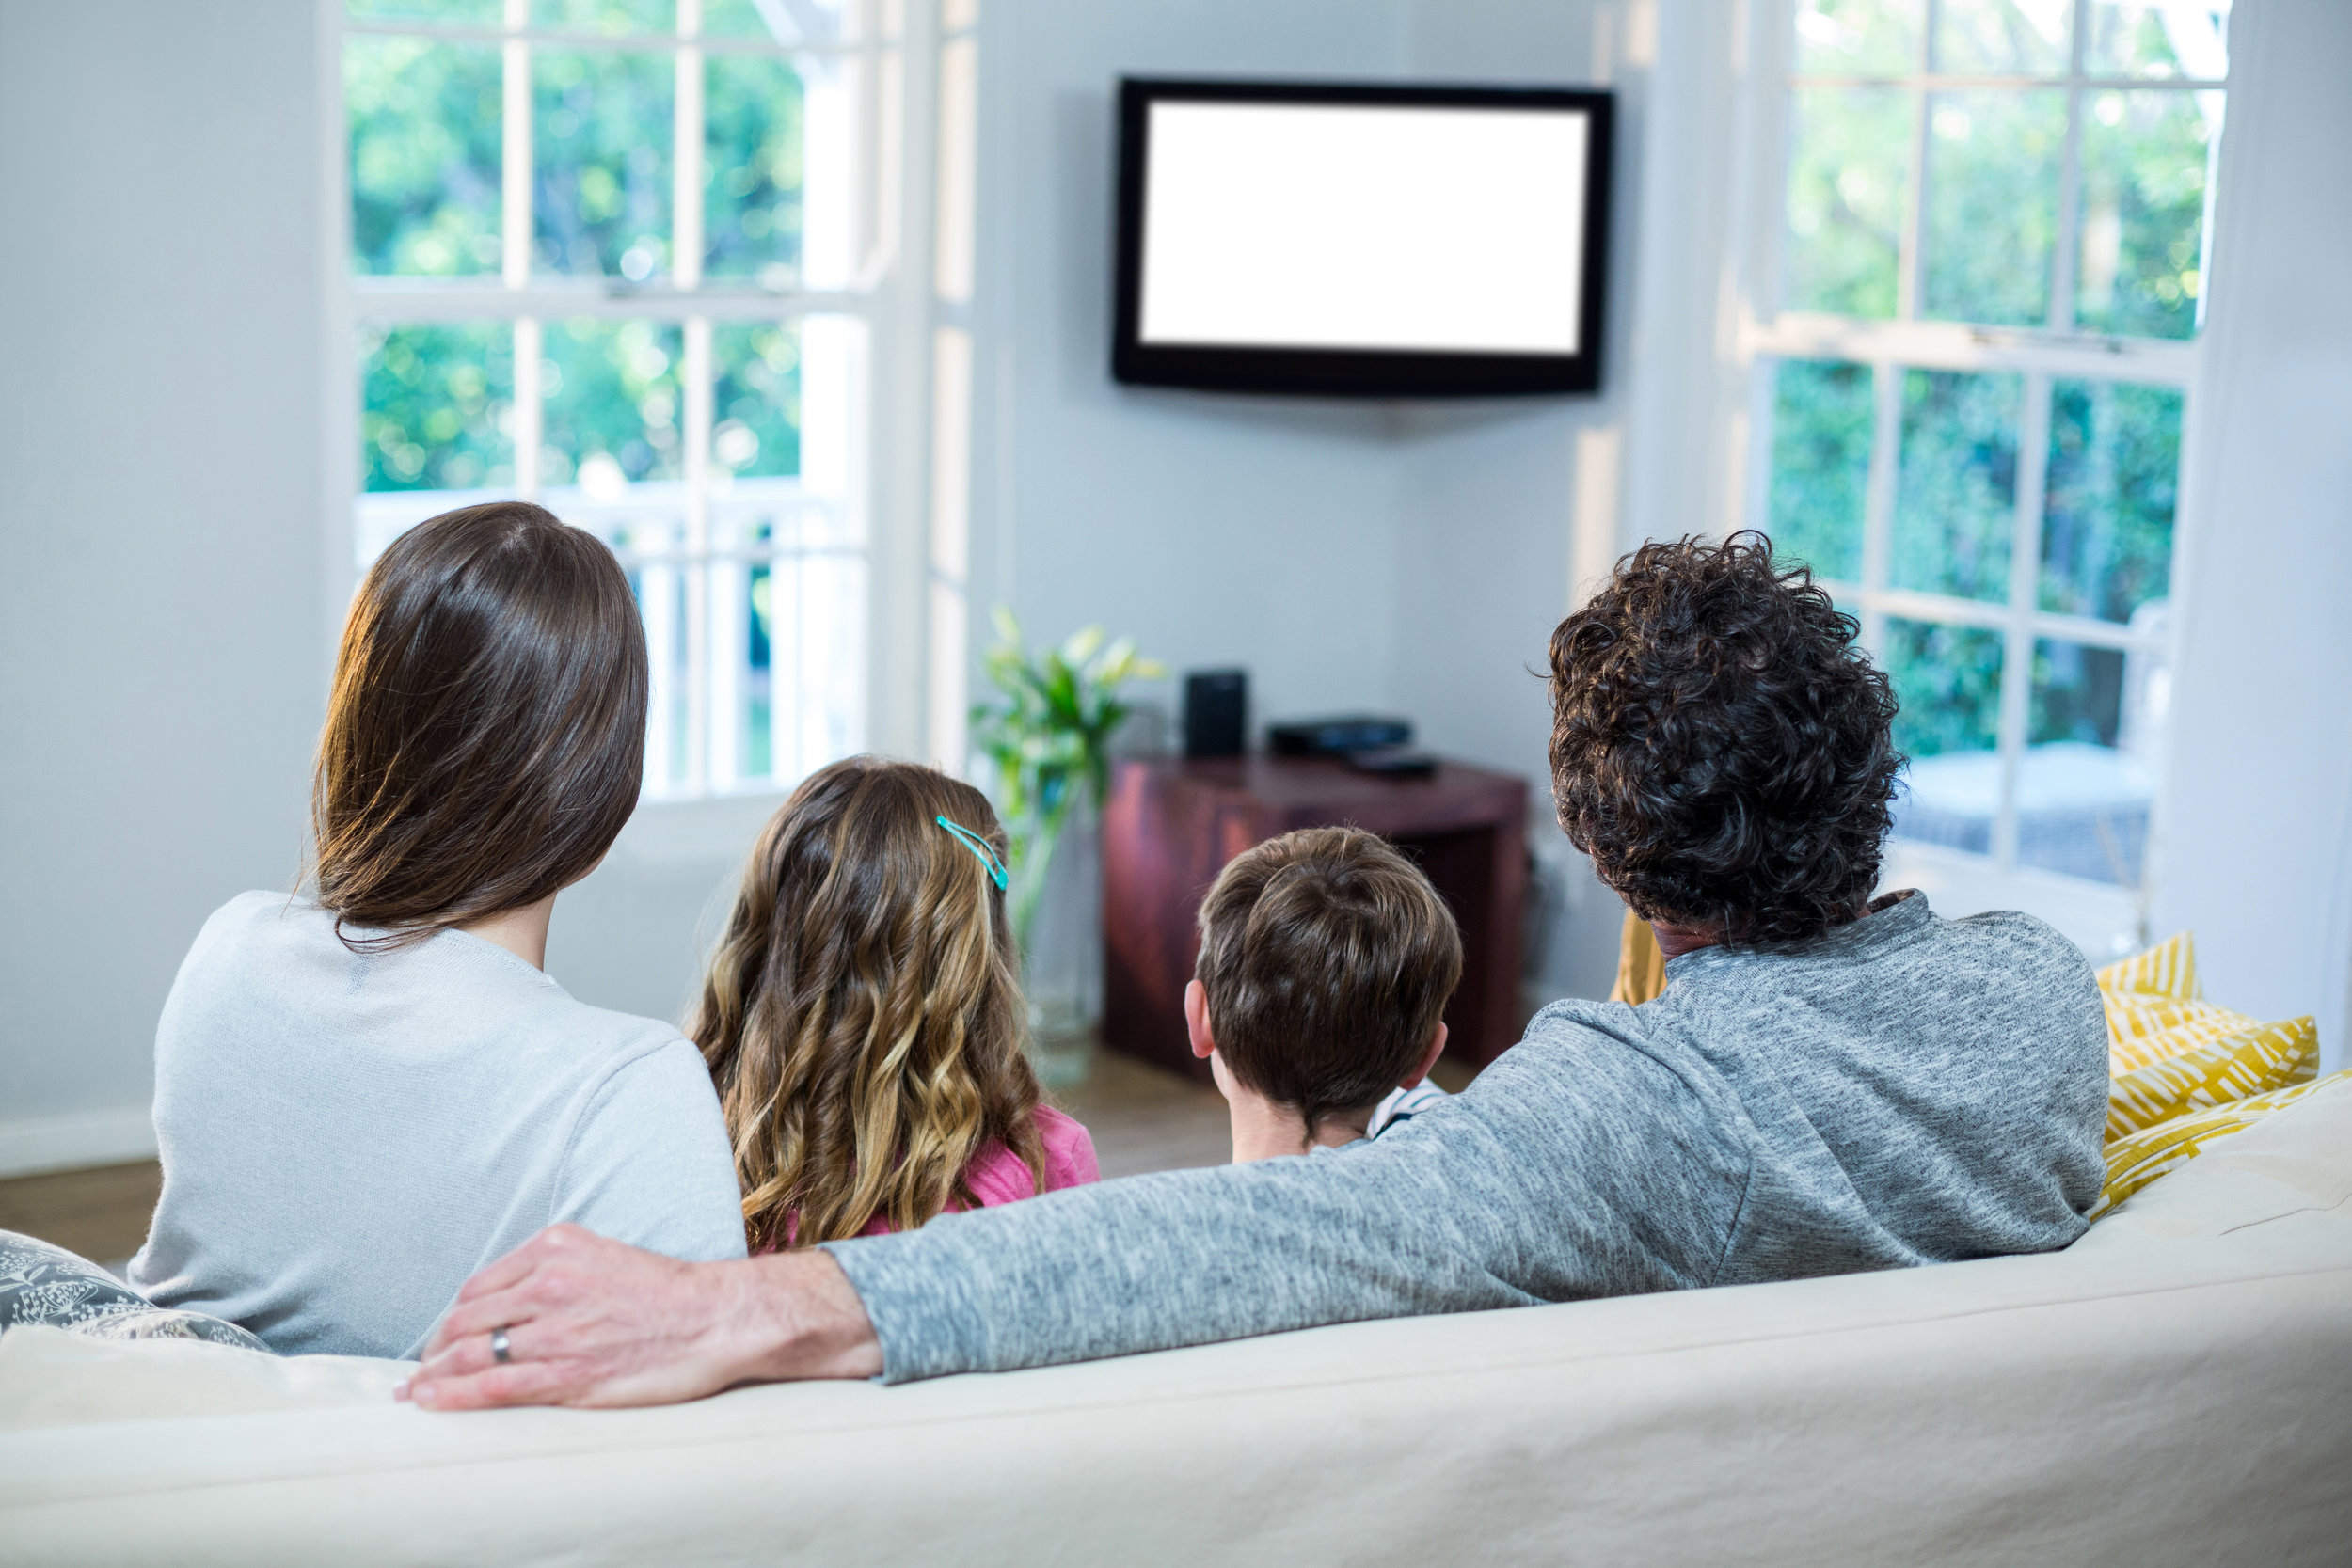 Телевизор сиди дома. Человек на диване со спины. Семья на диване со спины. Семья смотрит телевизор. Семья сидит спиной.